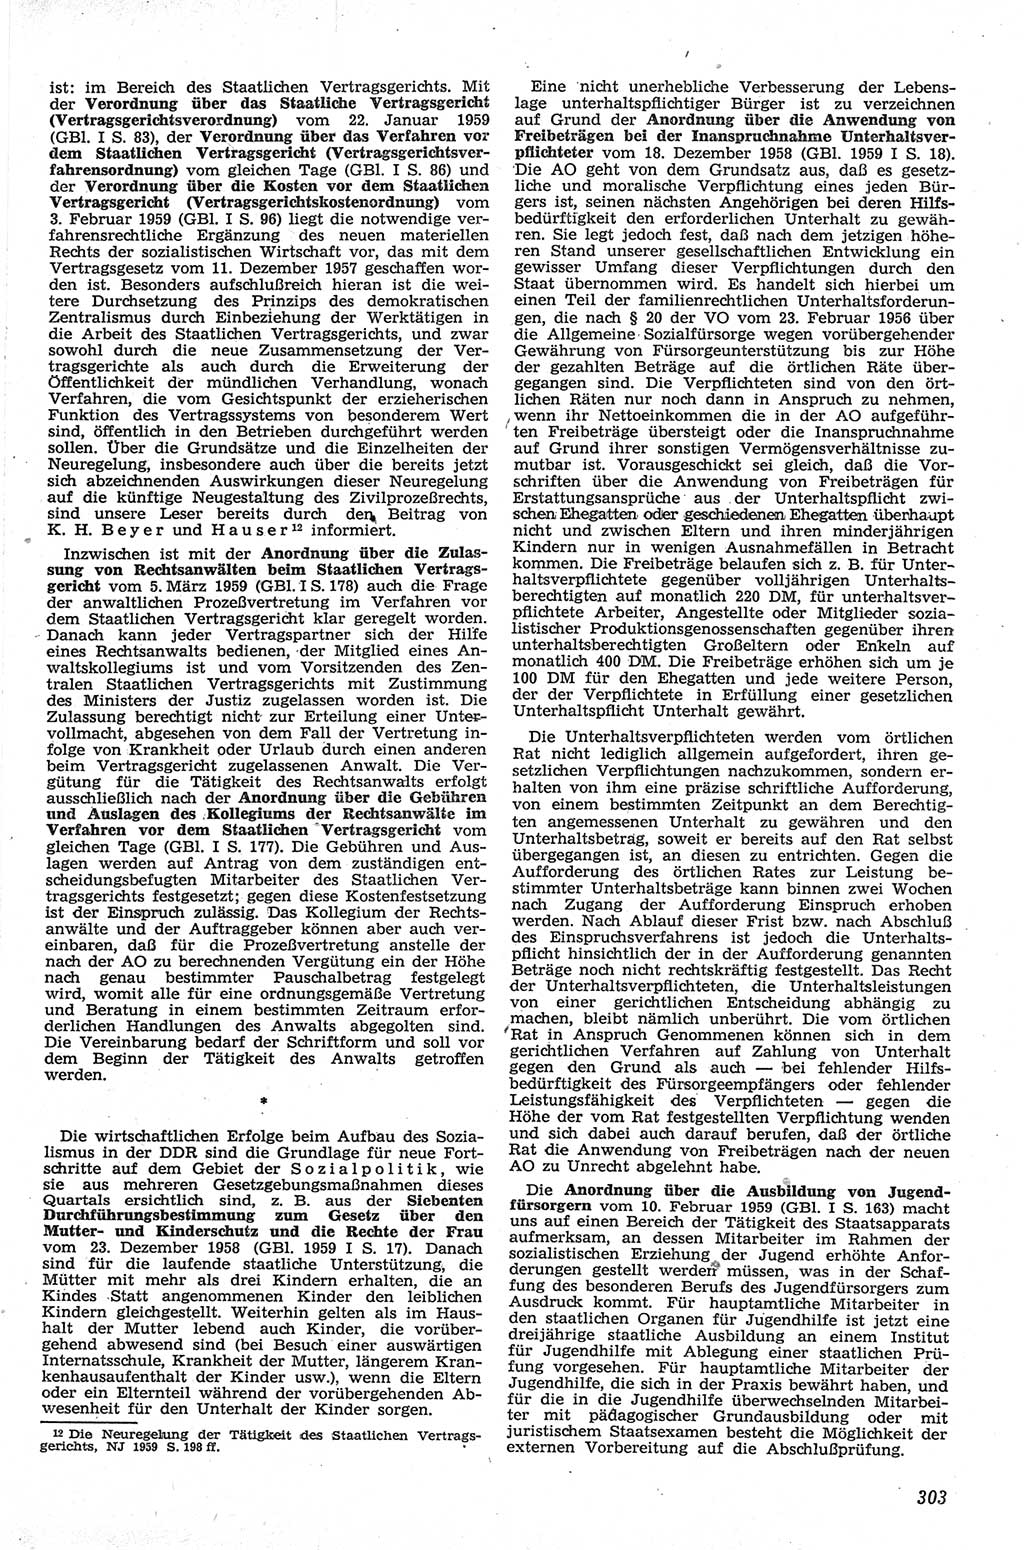 Neue Justiz (NJ), Zeitschrift für Recht und Rechtswissenschaft [Deutsche Demokratische Republik (DDR)], 13. Jahrgang 1959, Seite 303 (NJ DDR 1959, S. 303)